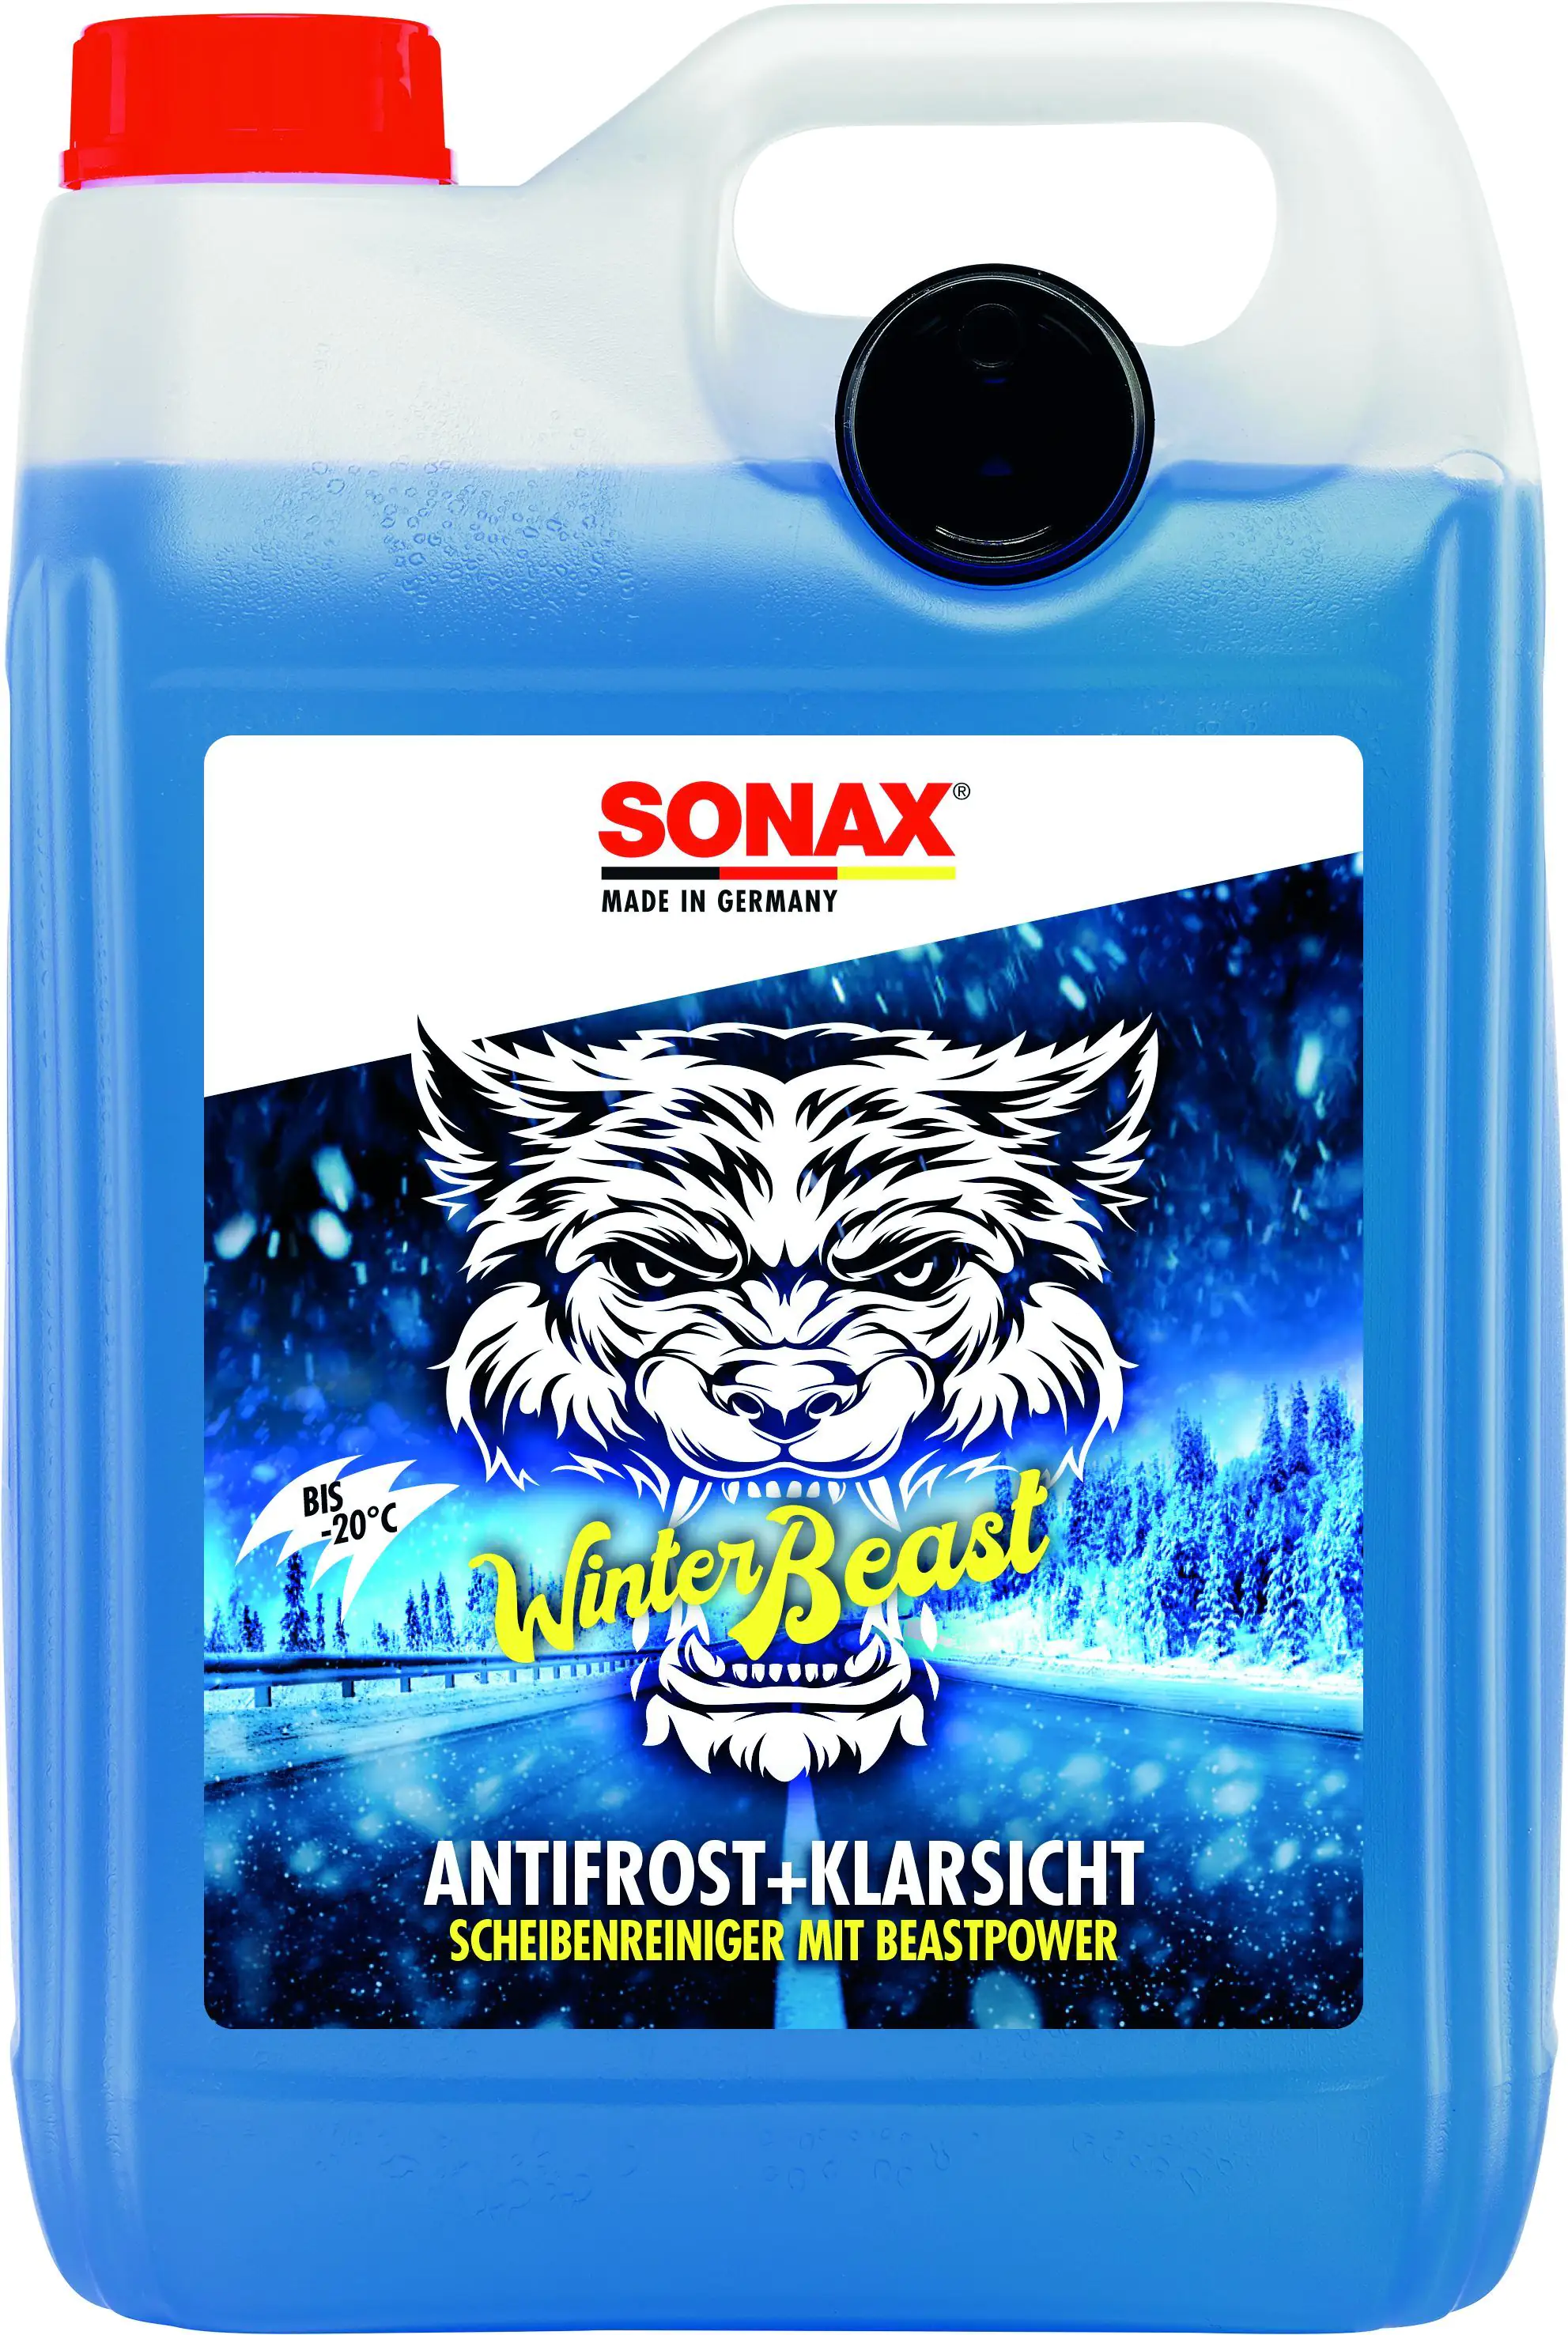 Sonax Scheibenreiniger WinterBeast Antifrost & Klarsicht -20°C